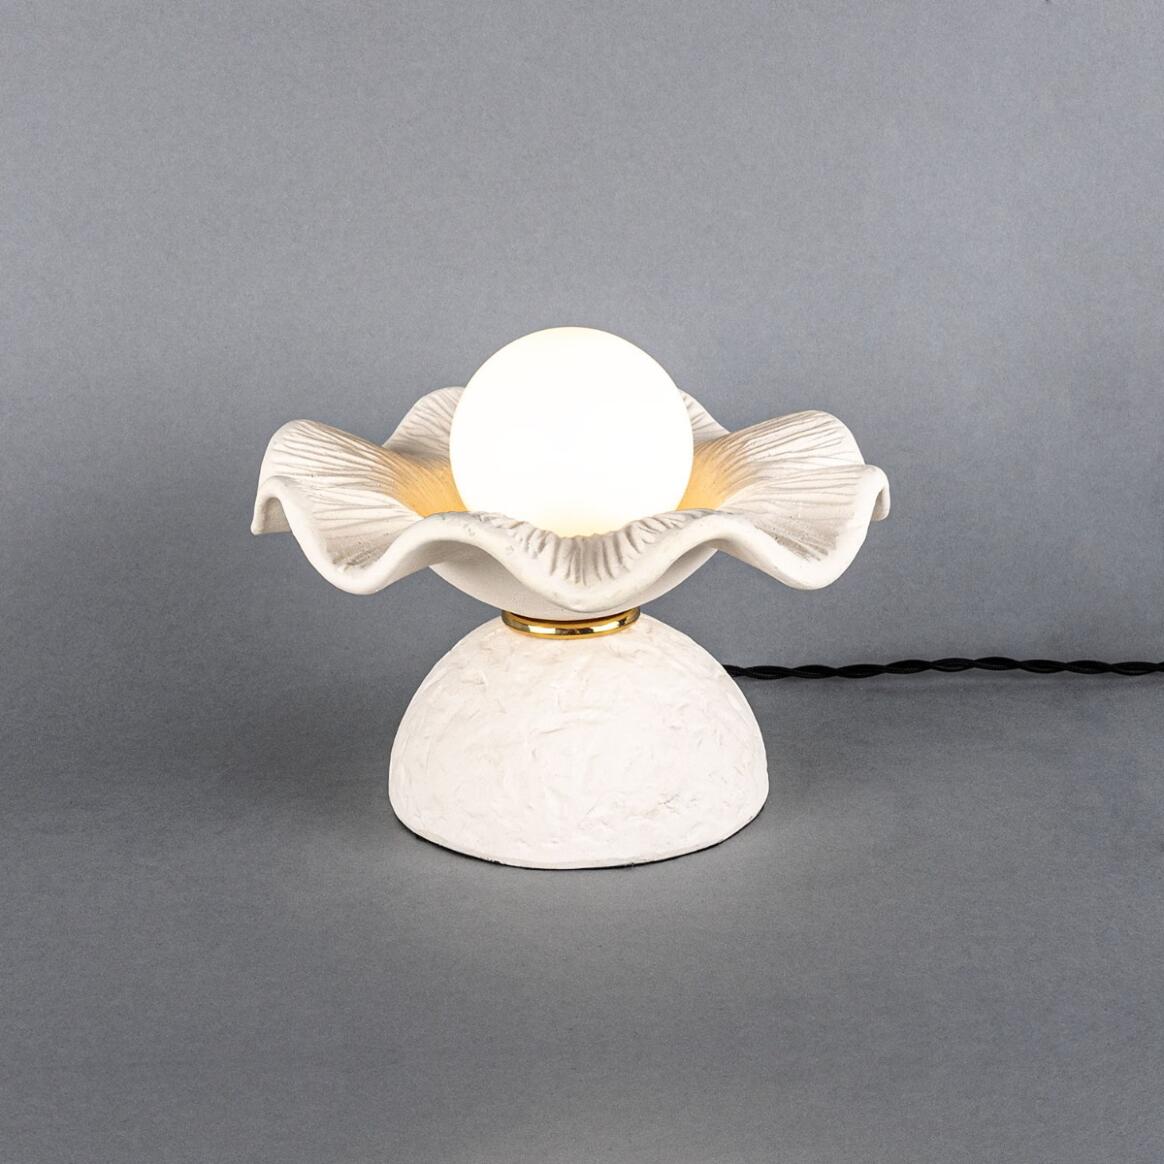 Lampe de table Rivale avec abat-jour en céramique ondulée, blanc mat rayé main product image